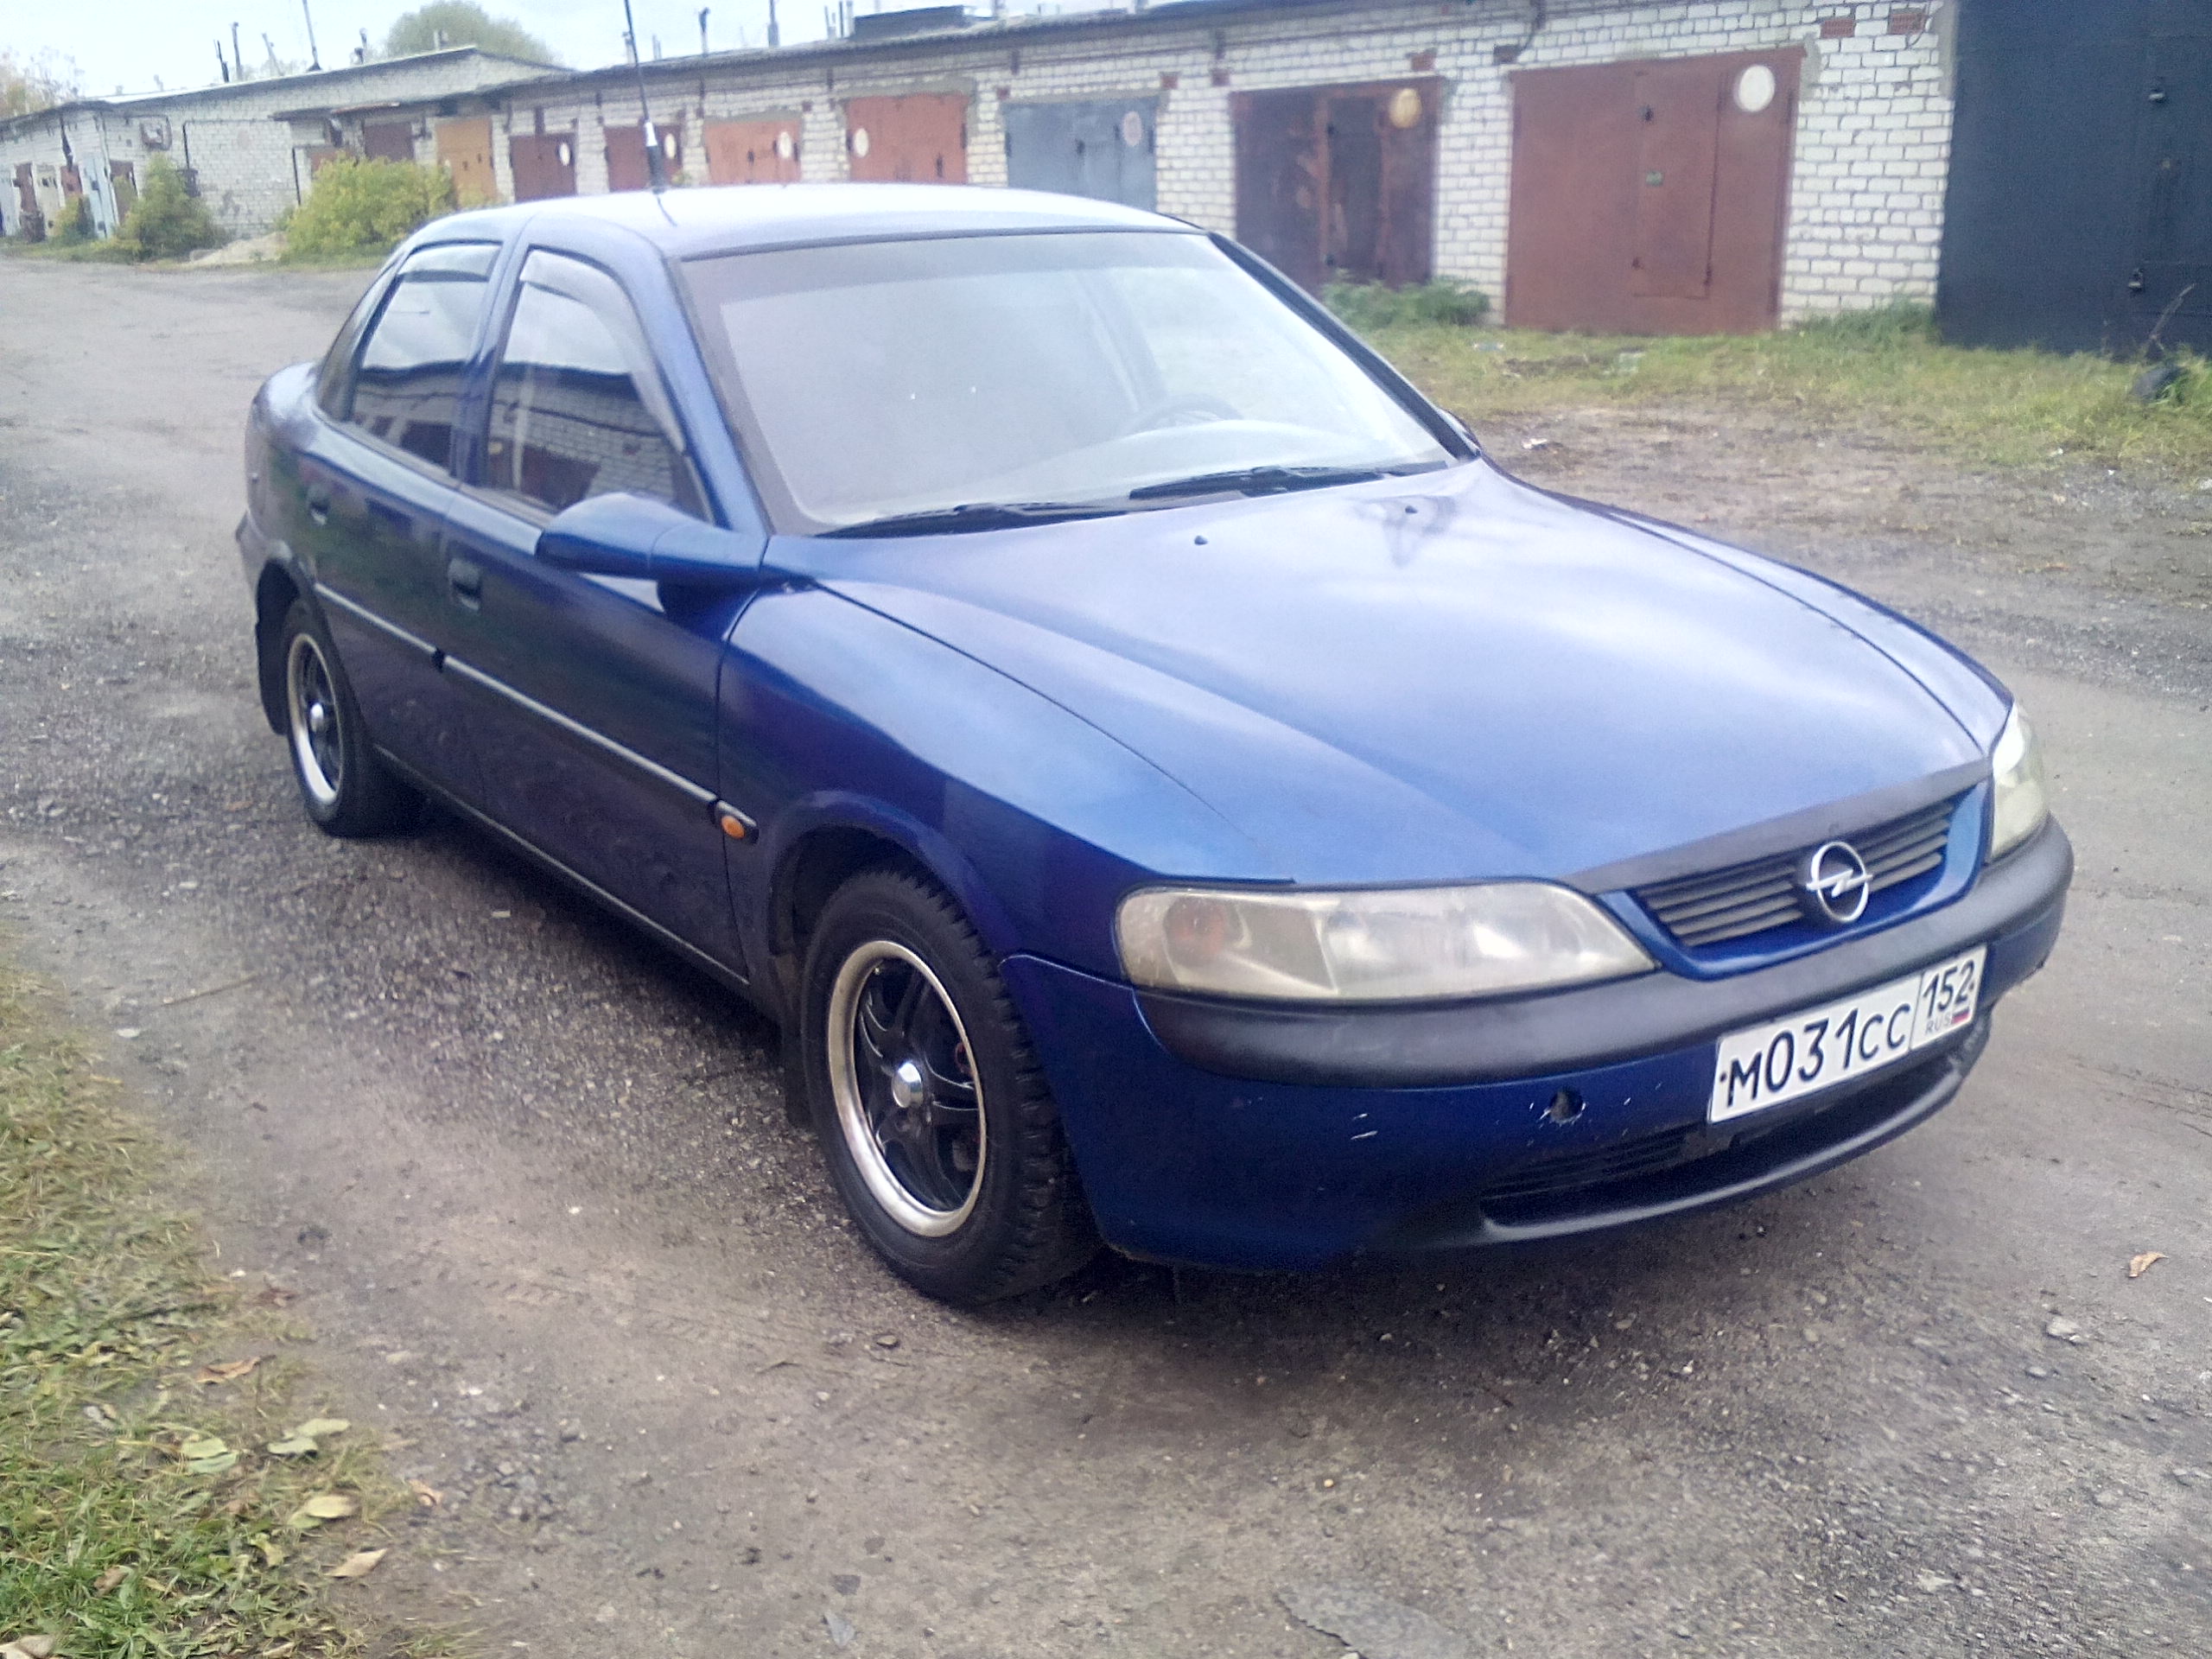 Иномарки до 600. Опель седан 1997. Опель седан 1997 диско. Спортивный Opel седан 1997 год. Опель седан синий.